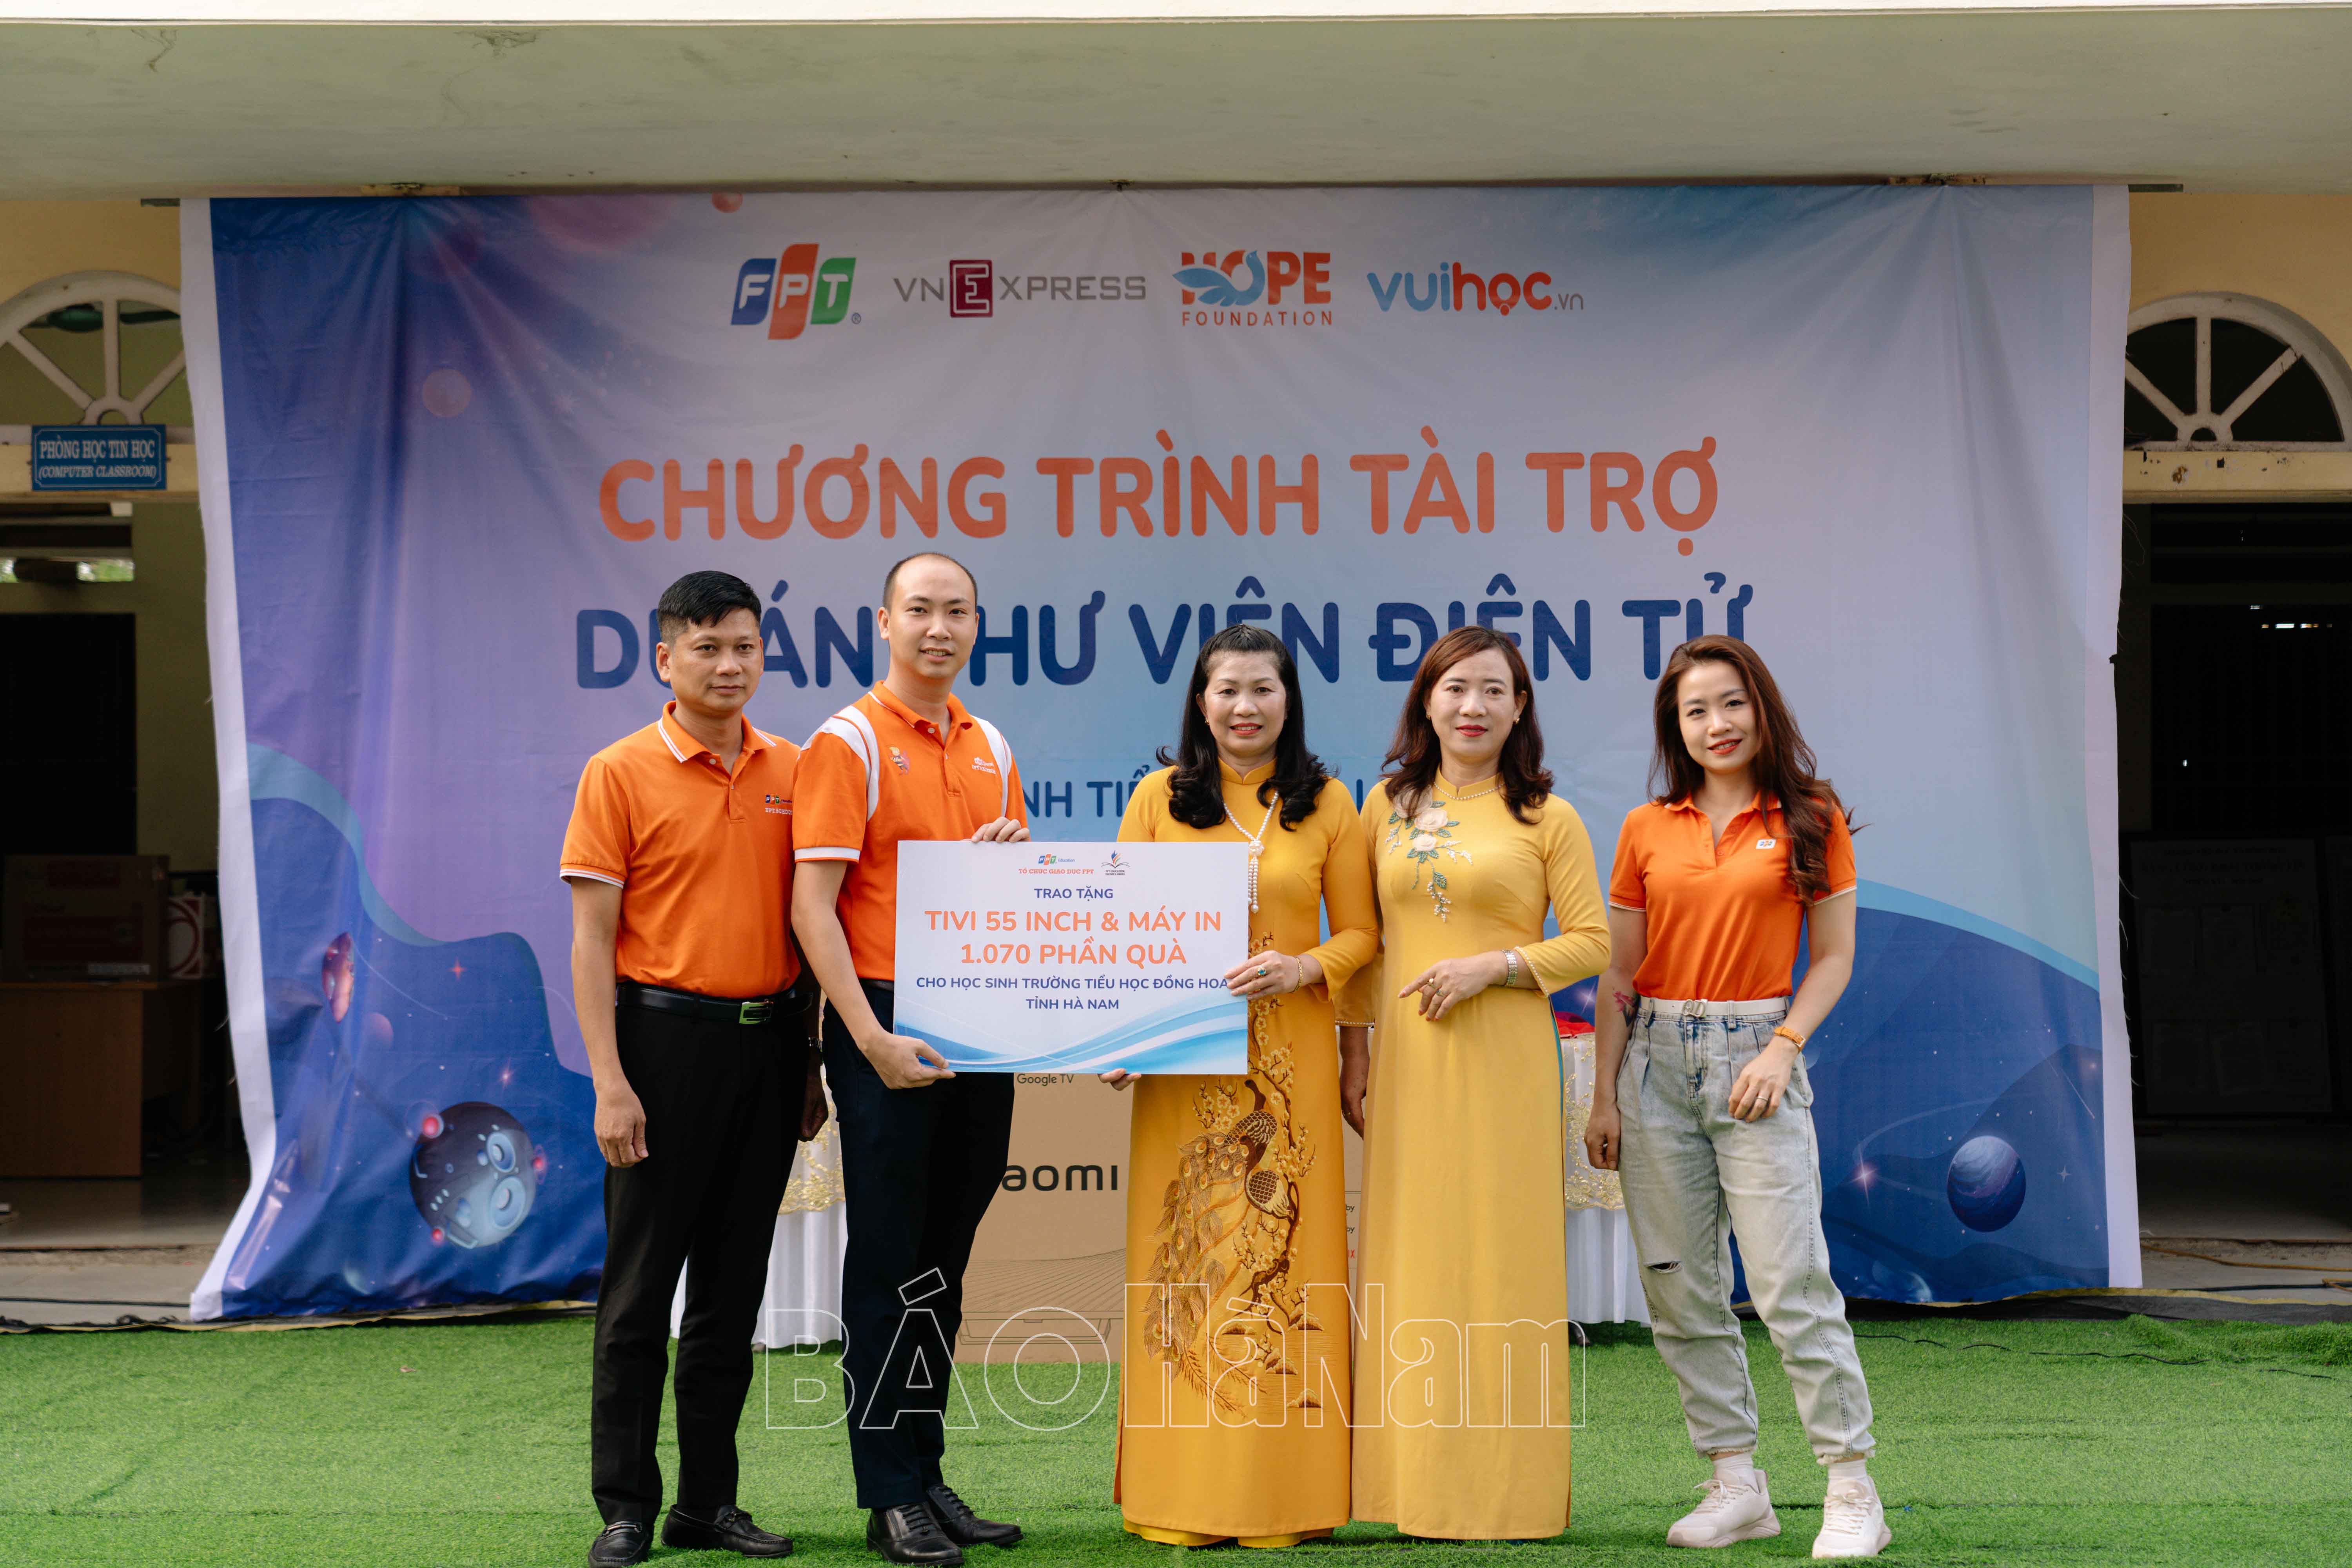 Quỹ Hy vọng trao tặng thư viện điện tử tại tỉnh Hà Nam